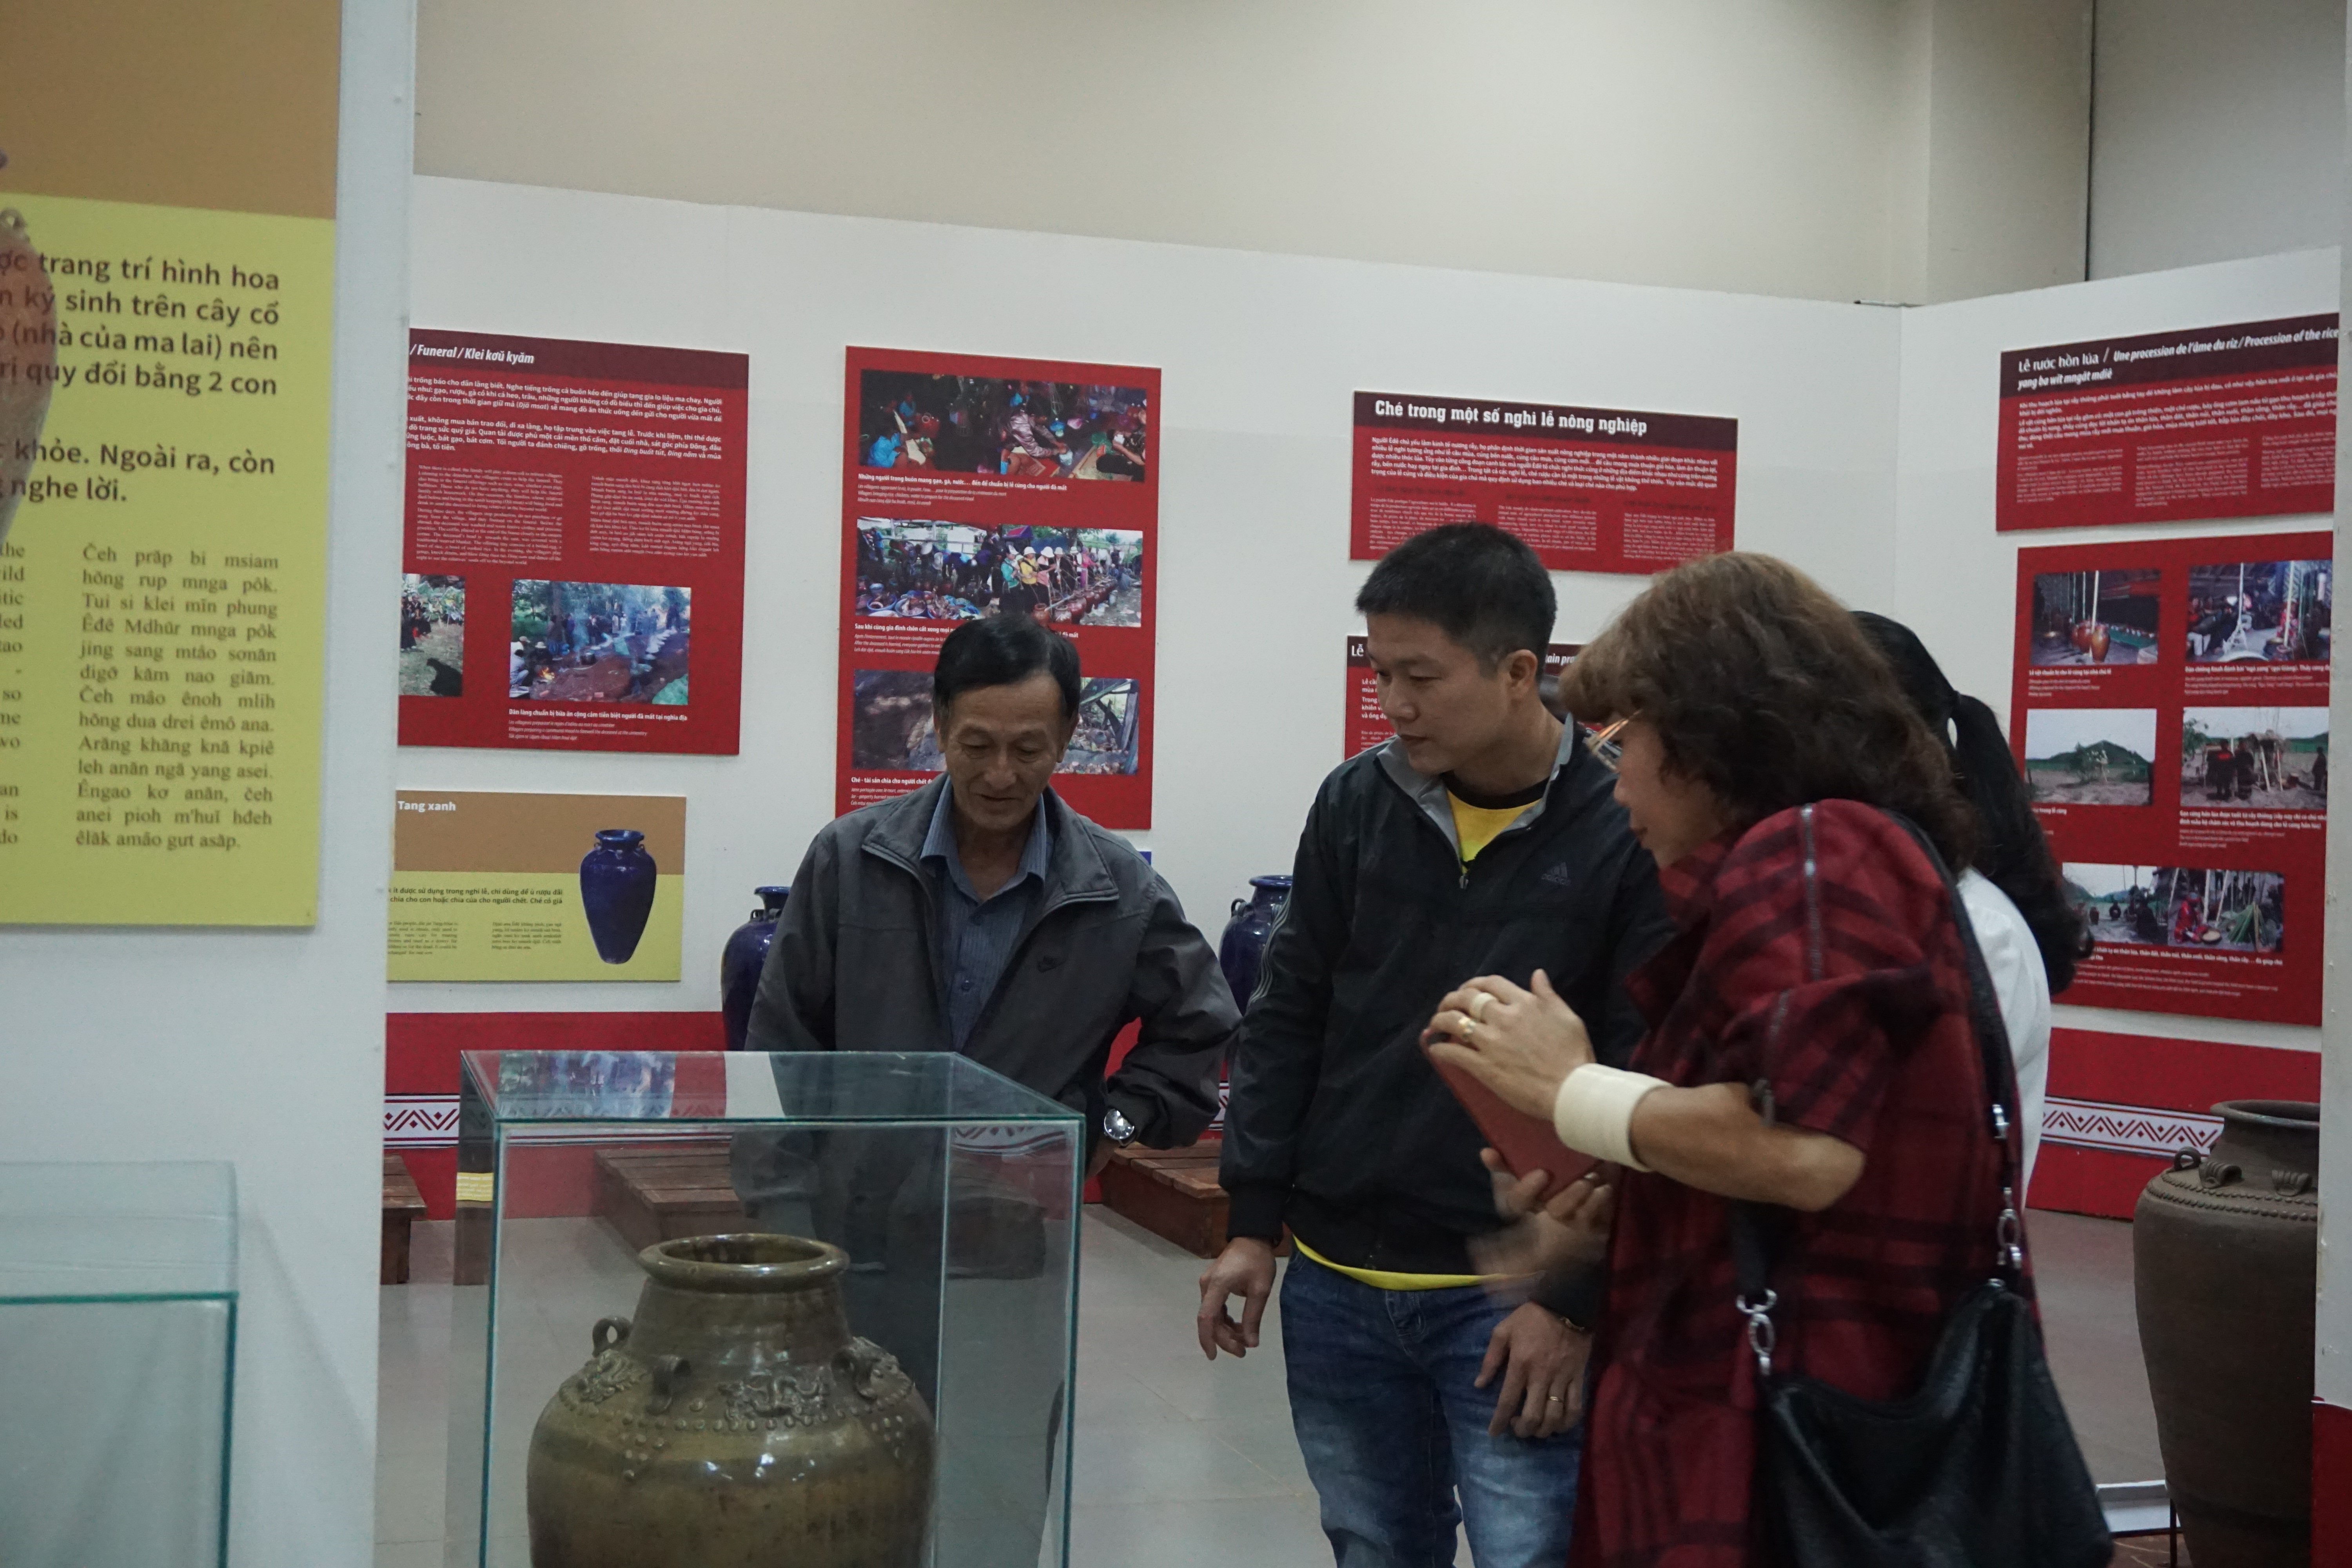 More than 1000 visitors to Dak Lak Museum